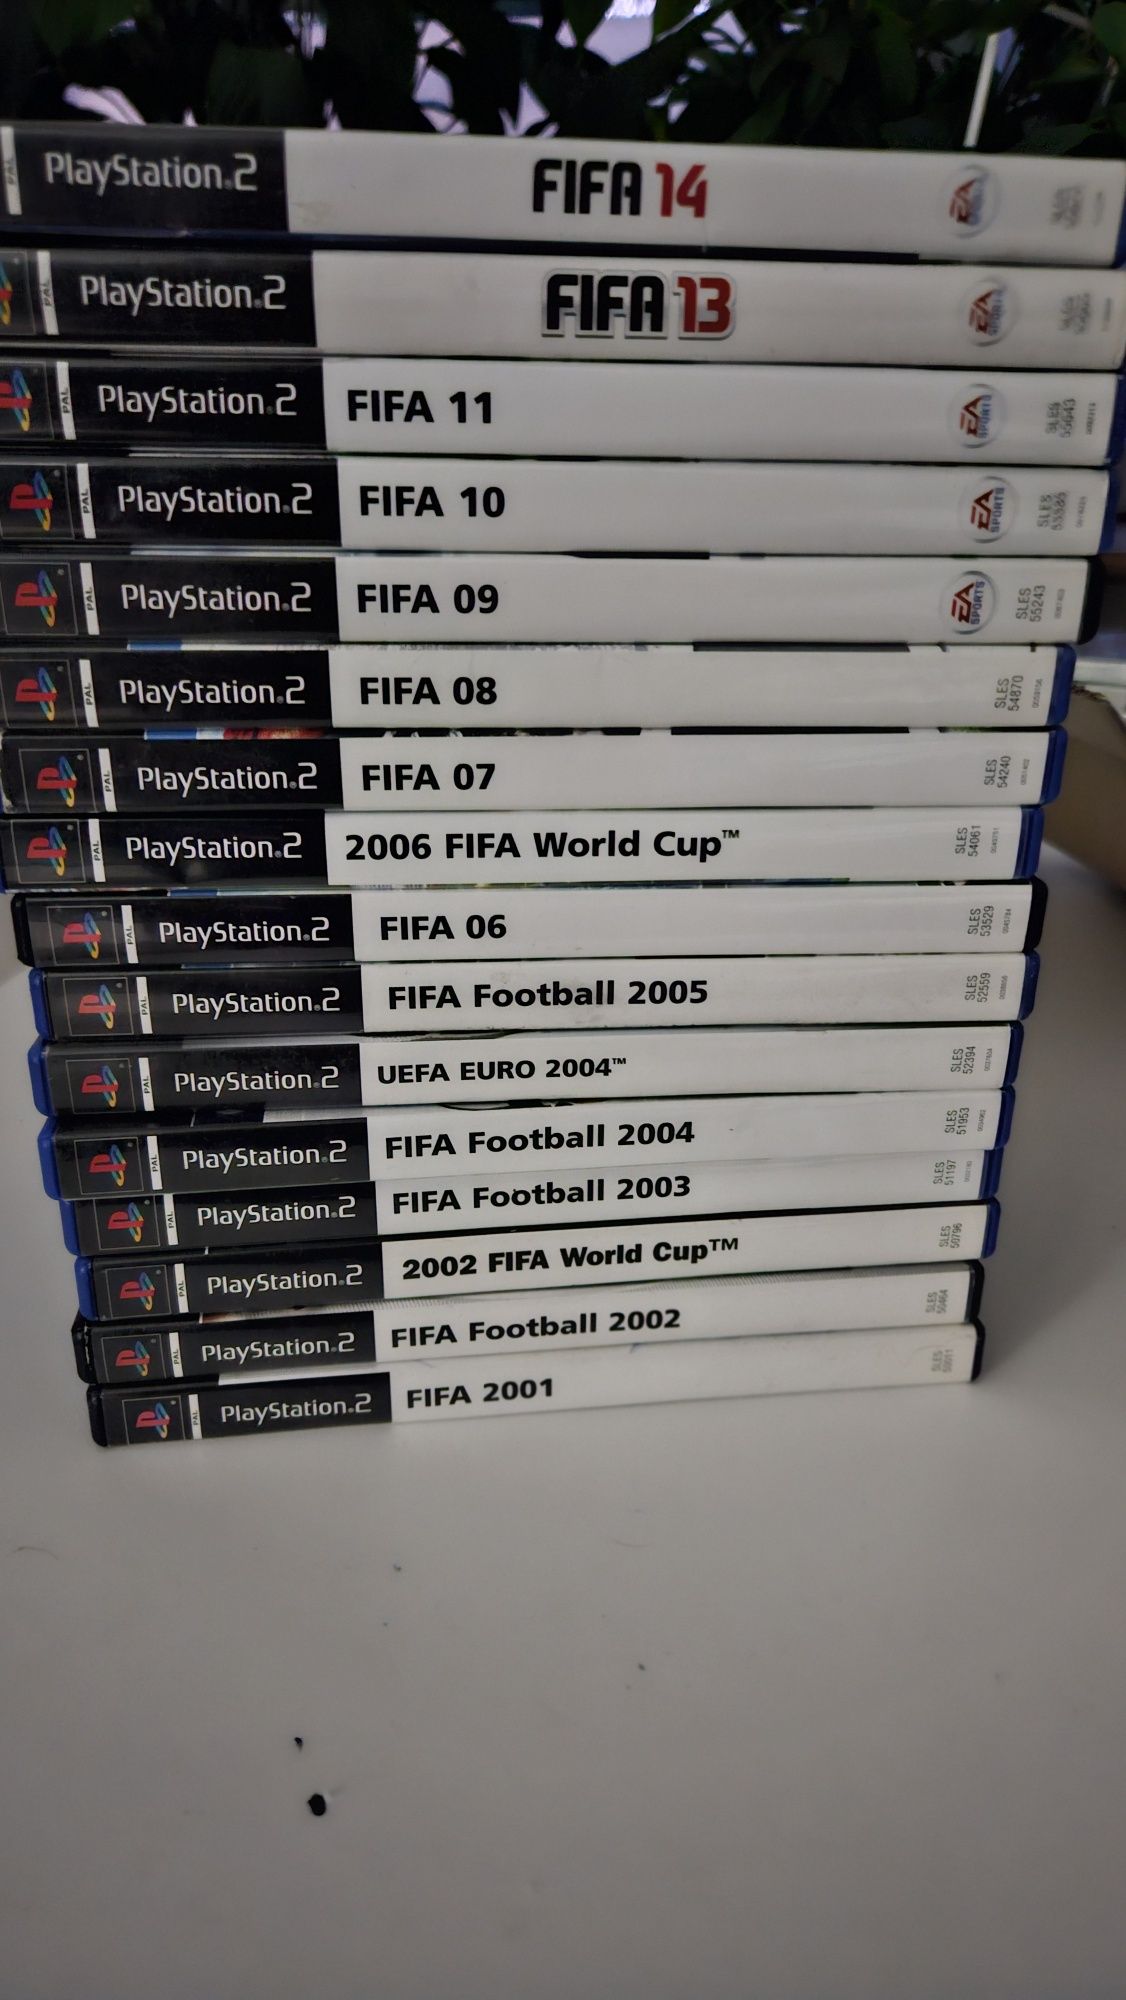 Zestaw gier z serii FIFA na PS2 - polskie wersje językowe.